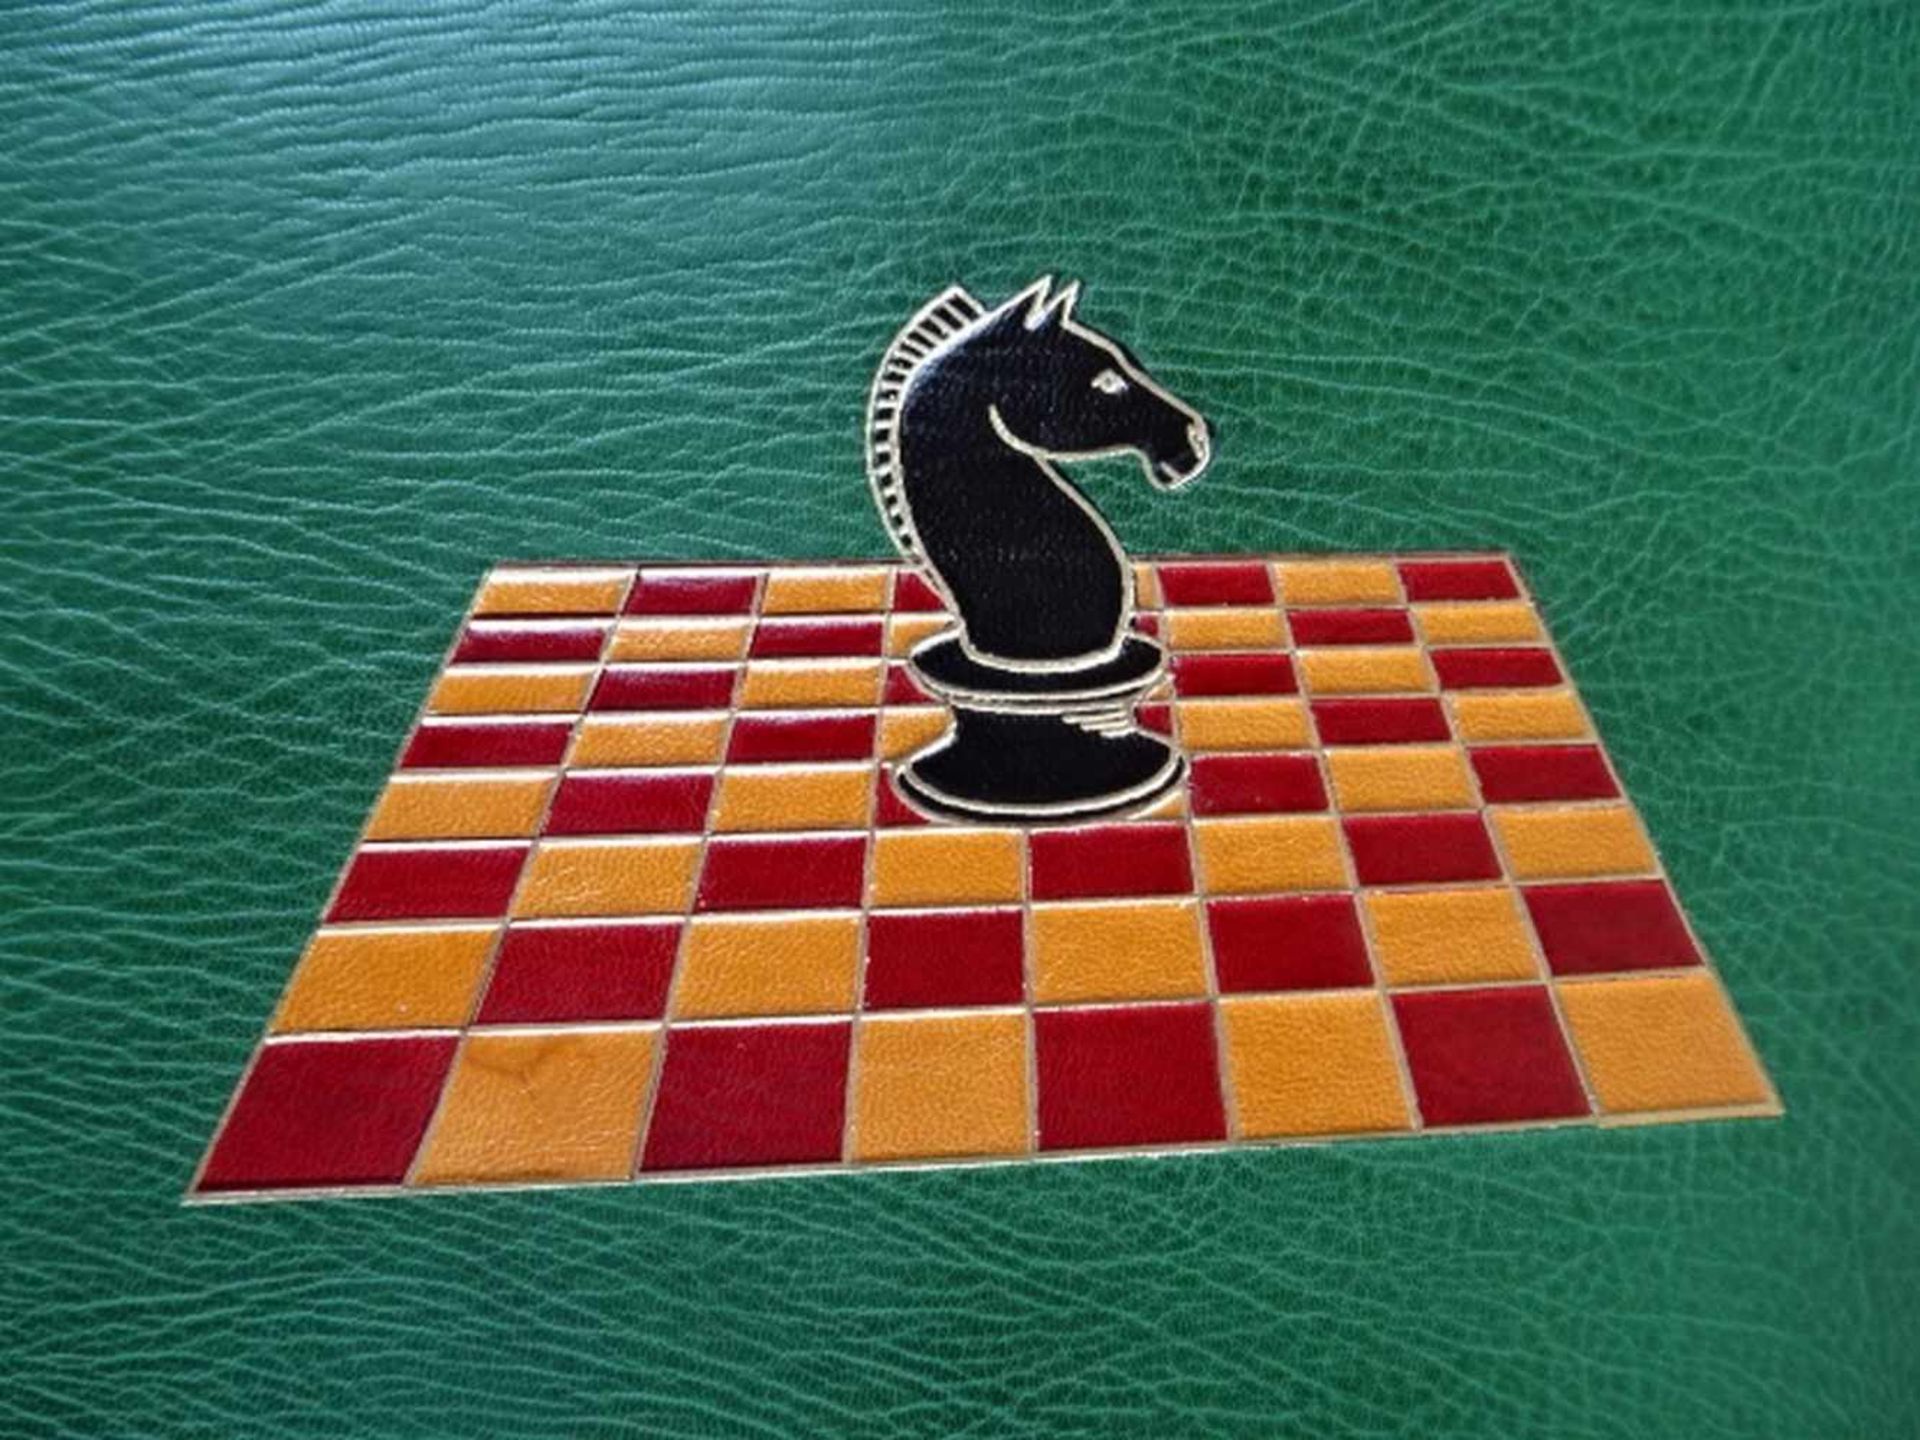 Einbände.-Gästebuch eines Schachspielers. Ca. 150 weiße Blätter. Um 1970. 4°. Grüner Maroquin- - Bild 2 aus 6